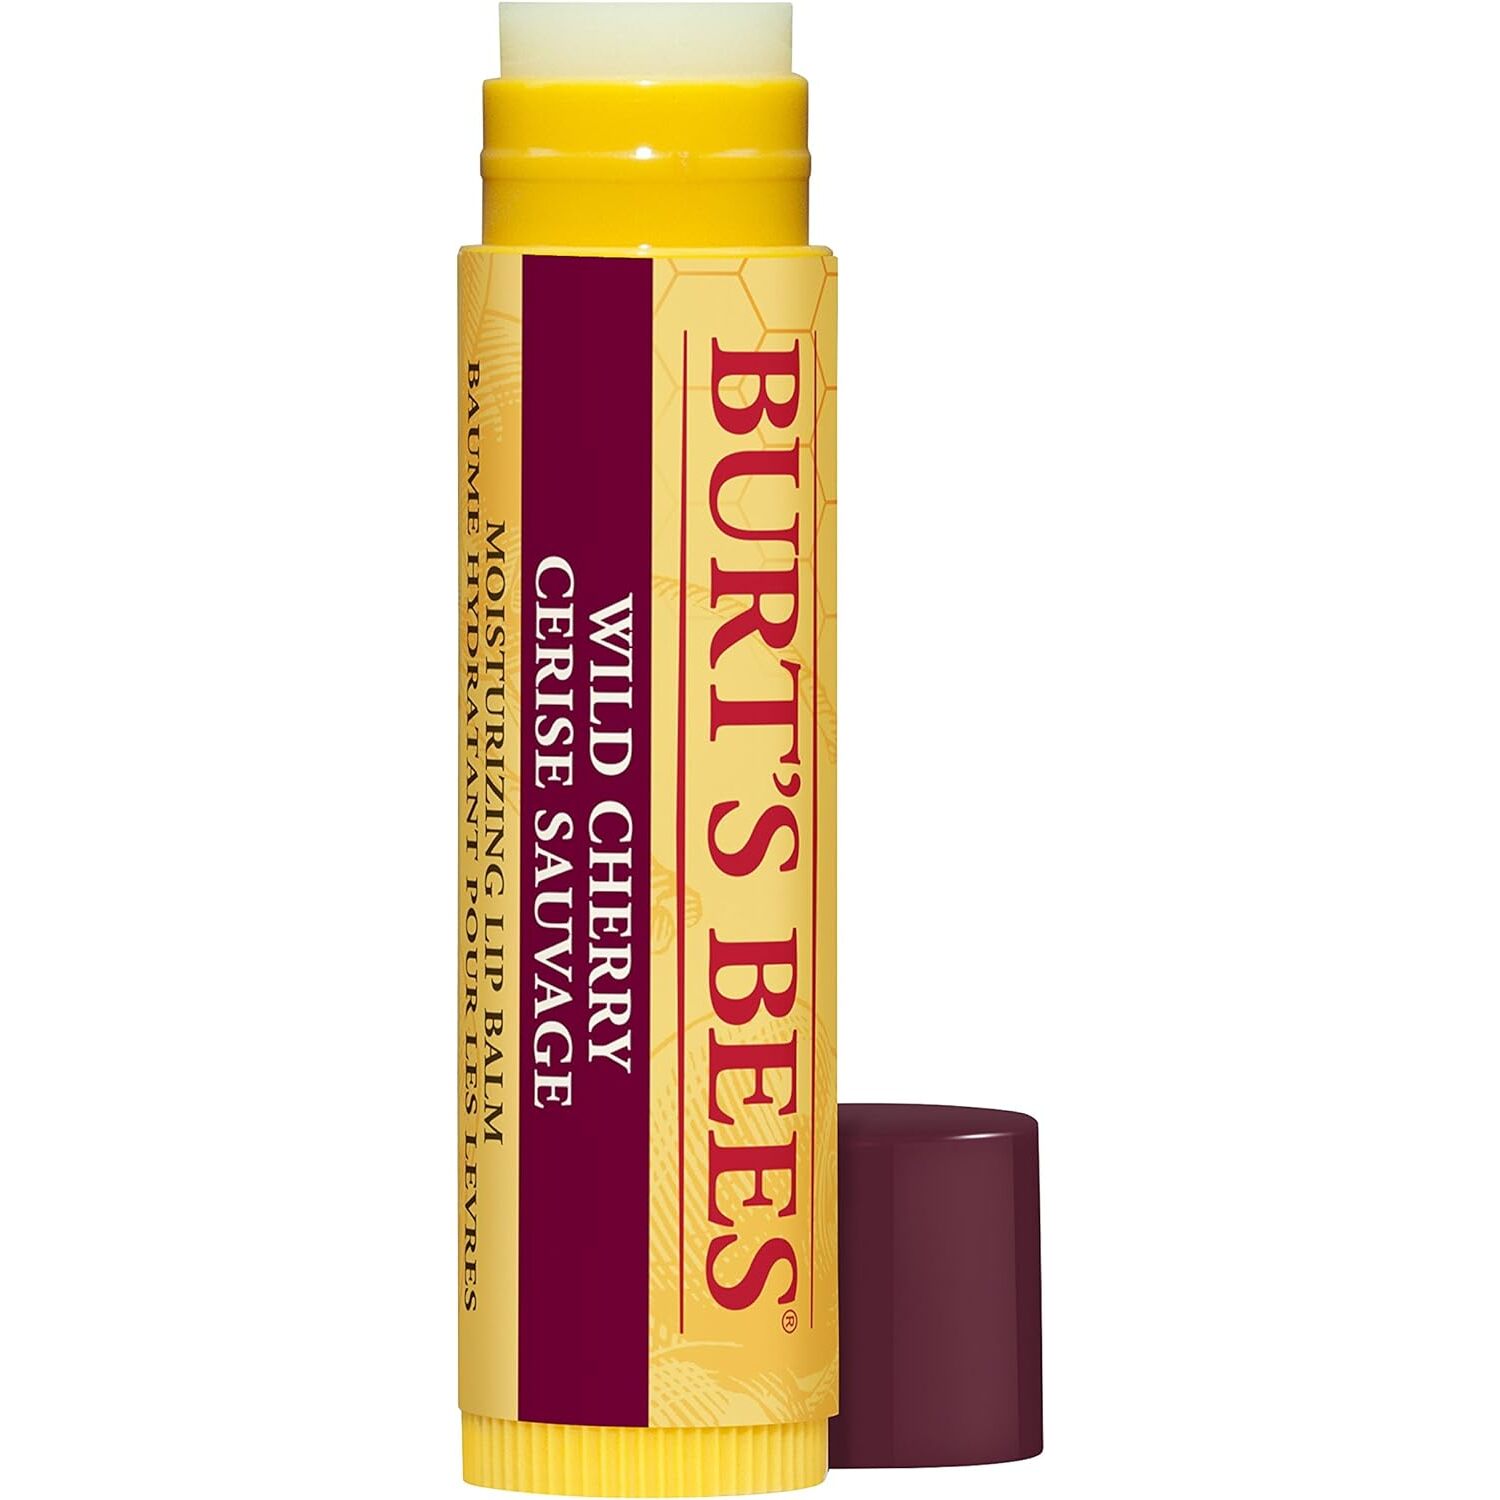 Burt's Bees Lip Balm - Yellow / Wild Cherry Image 2